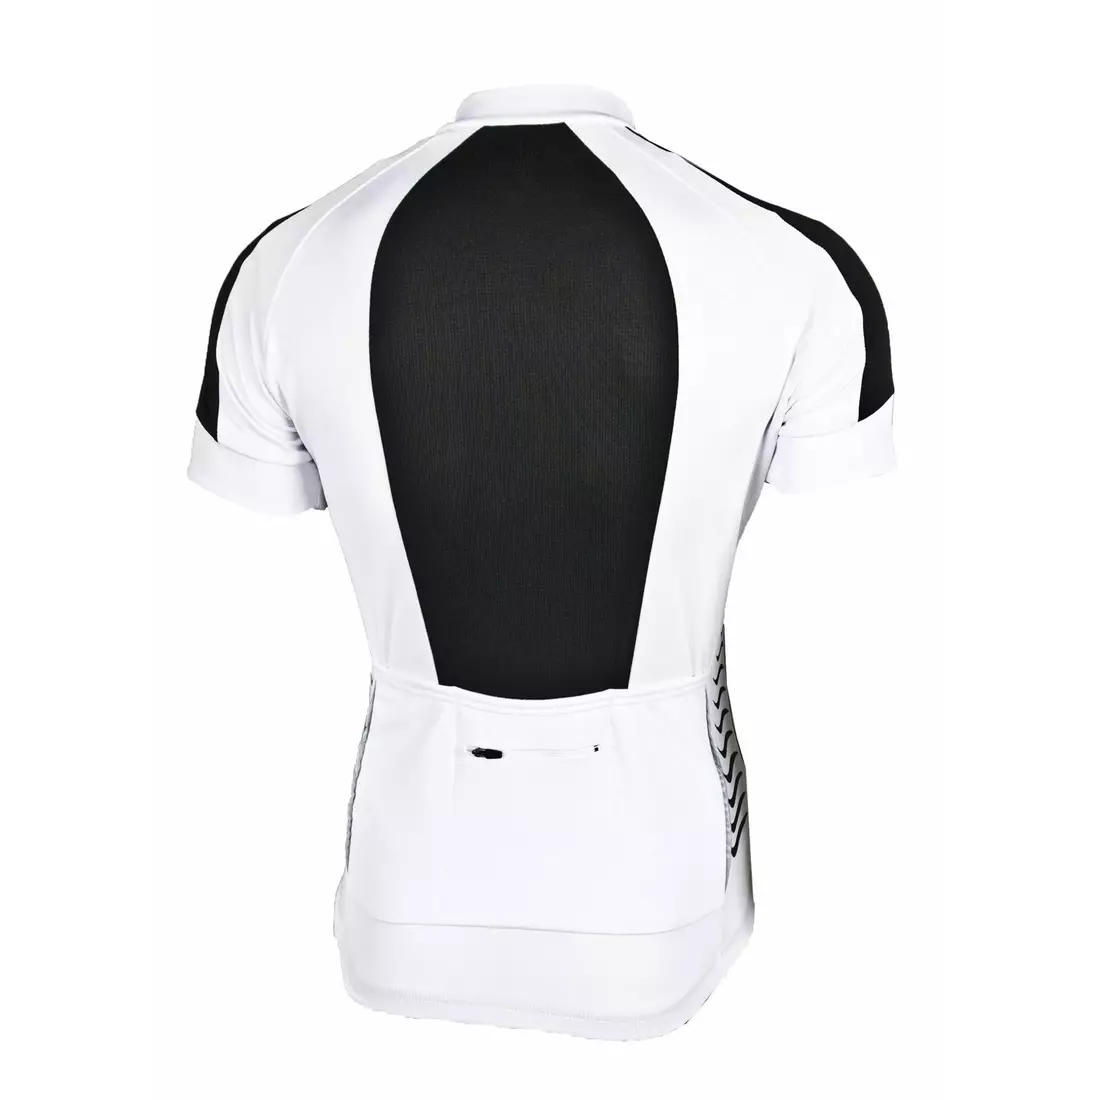 DEKO WHITE tricou de ciclism pentru bărbați, alb și negru